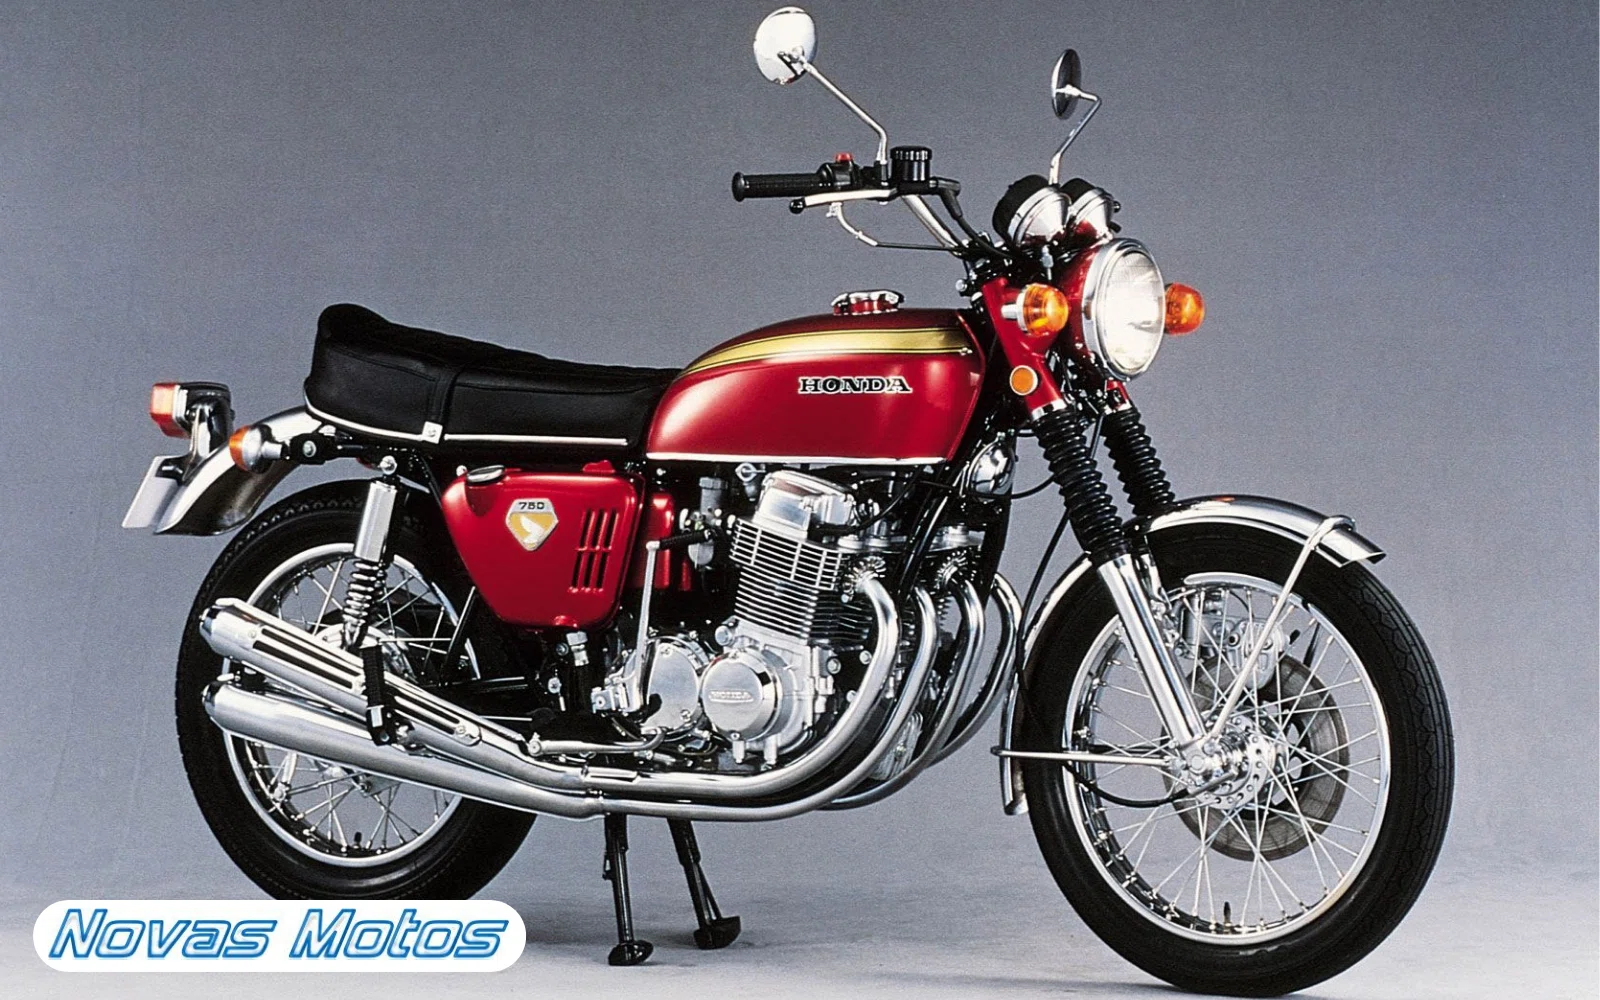 Honda-CB750-antiga As 10 motos mais icônicas da história do motociclismo - Confira o antes e depois!